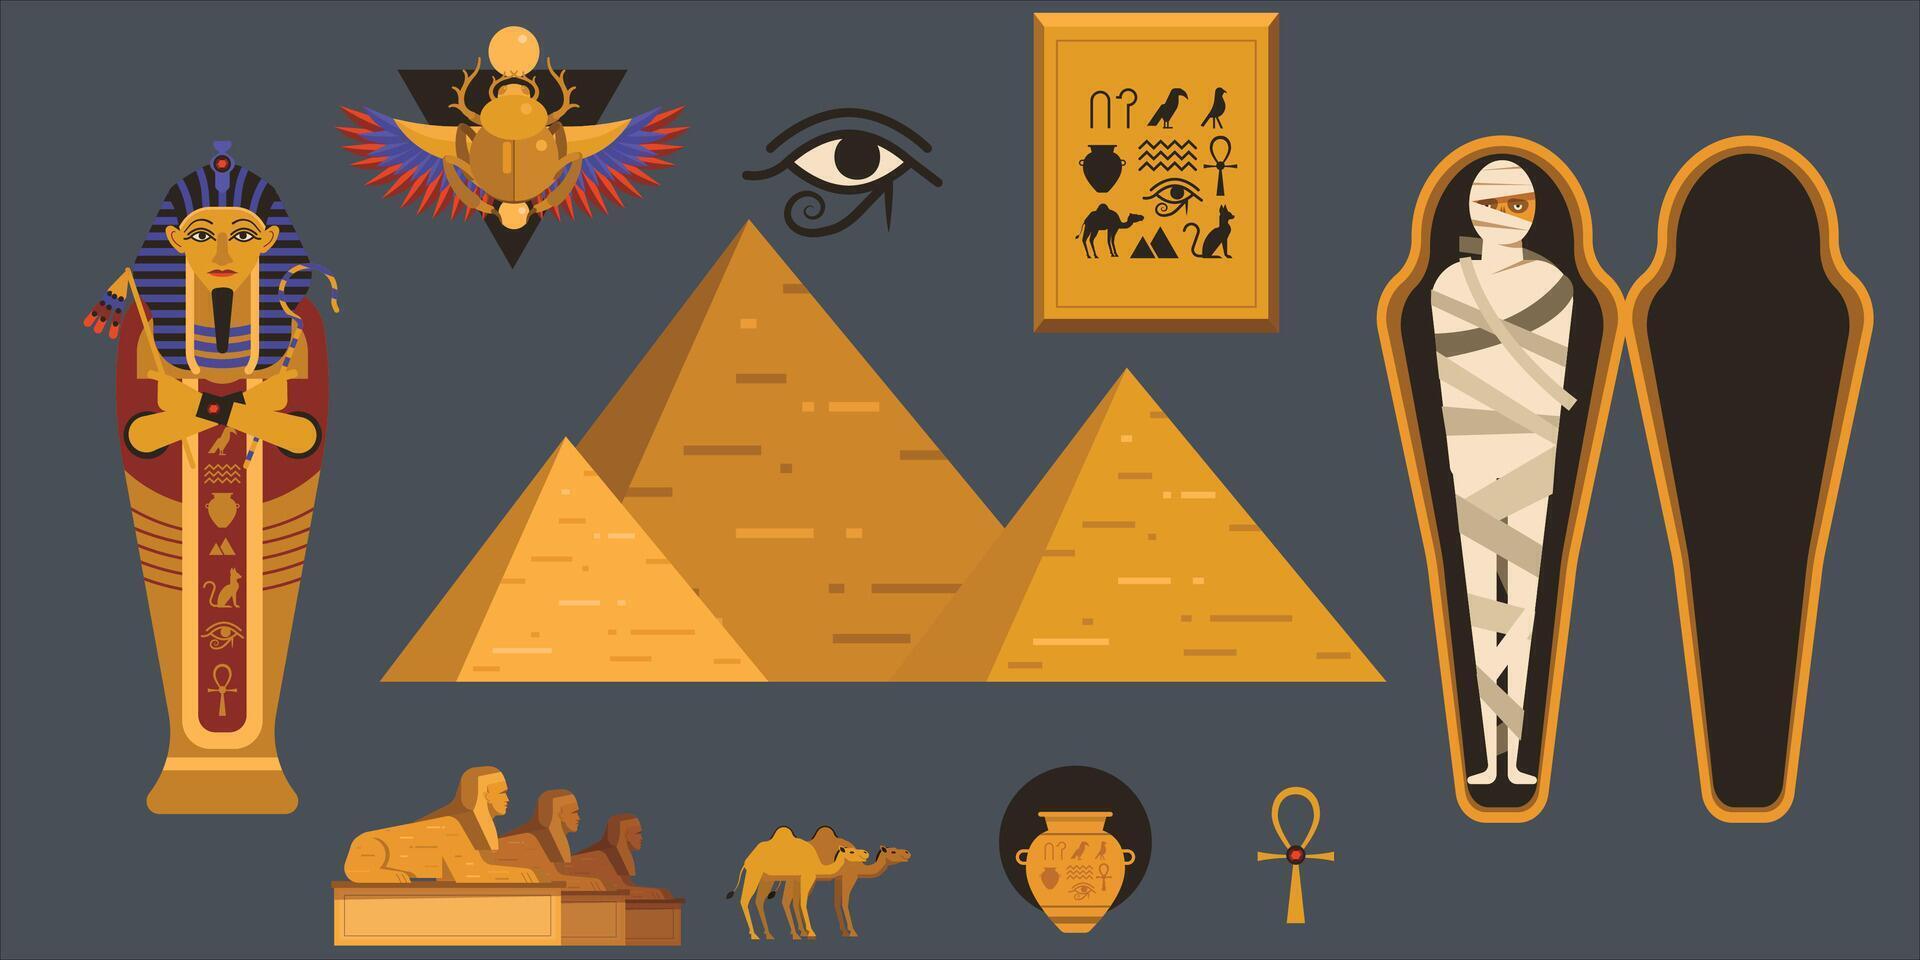 Vektor Sammlung von ägyptisch Kultur und Natur Bilder. Ägypten Symbol Satz. Pyramide, Anubis, Schpinx, Kamel, Tutanchamun, Skarabäus und Mumie. isoliert auf grau.